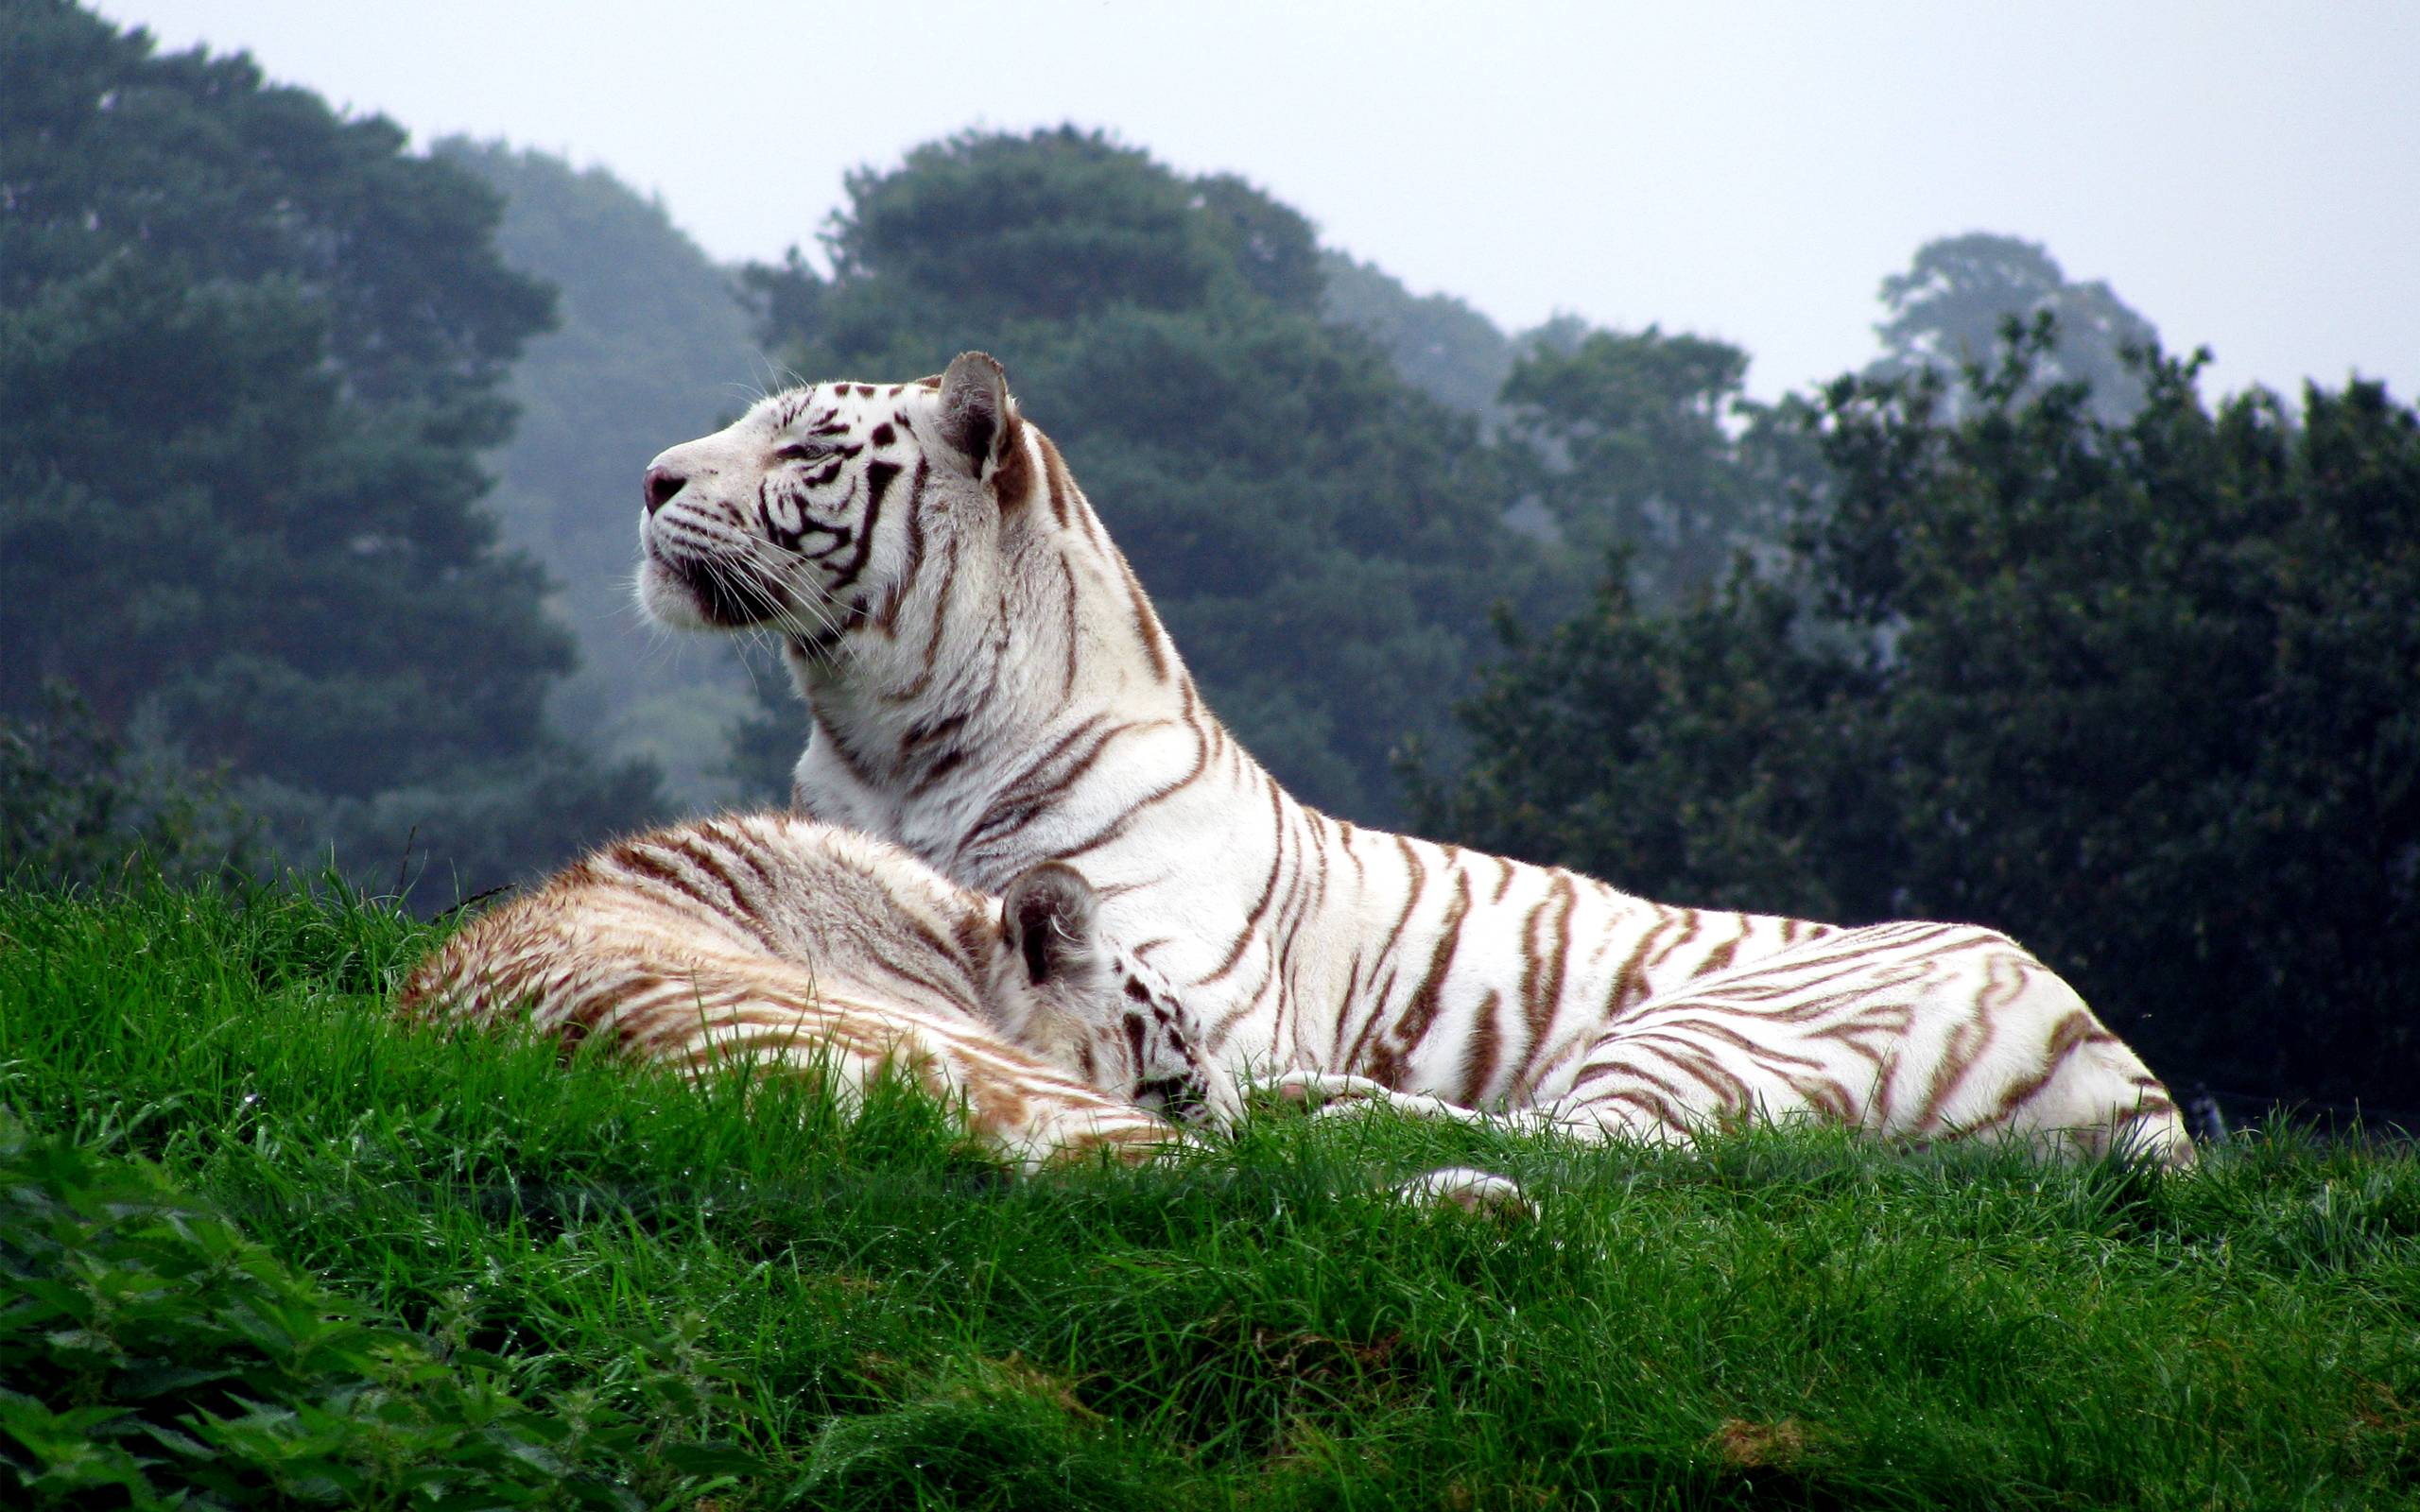 White Tiger HD Wallpaper